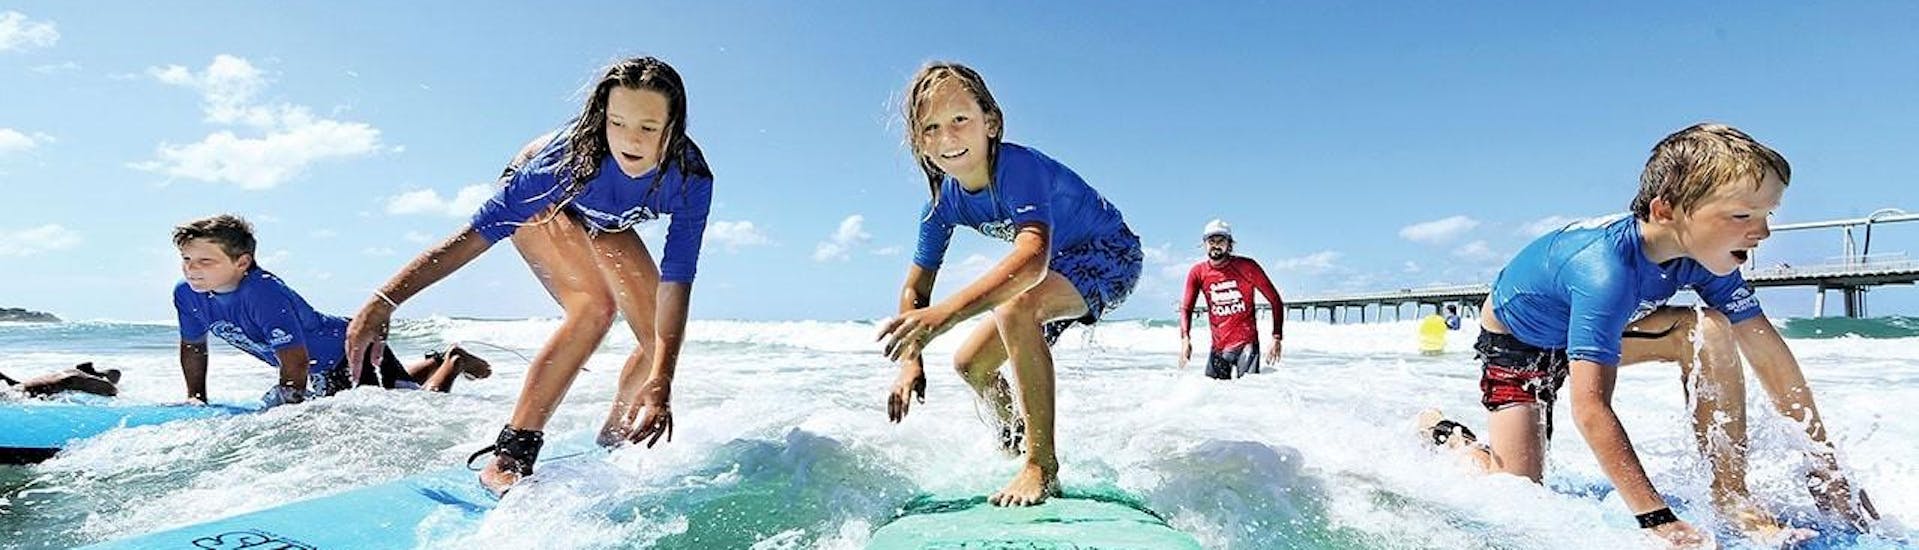 Surfkurs in Main Beach - Gold Coast (ab 6 J.) für Anfänger.